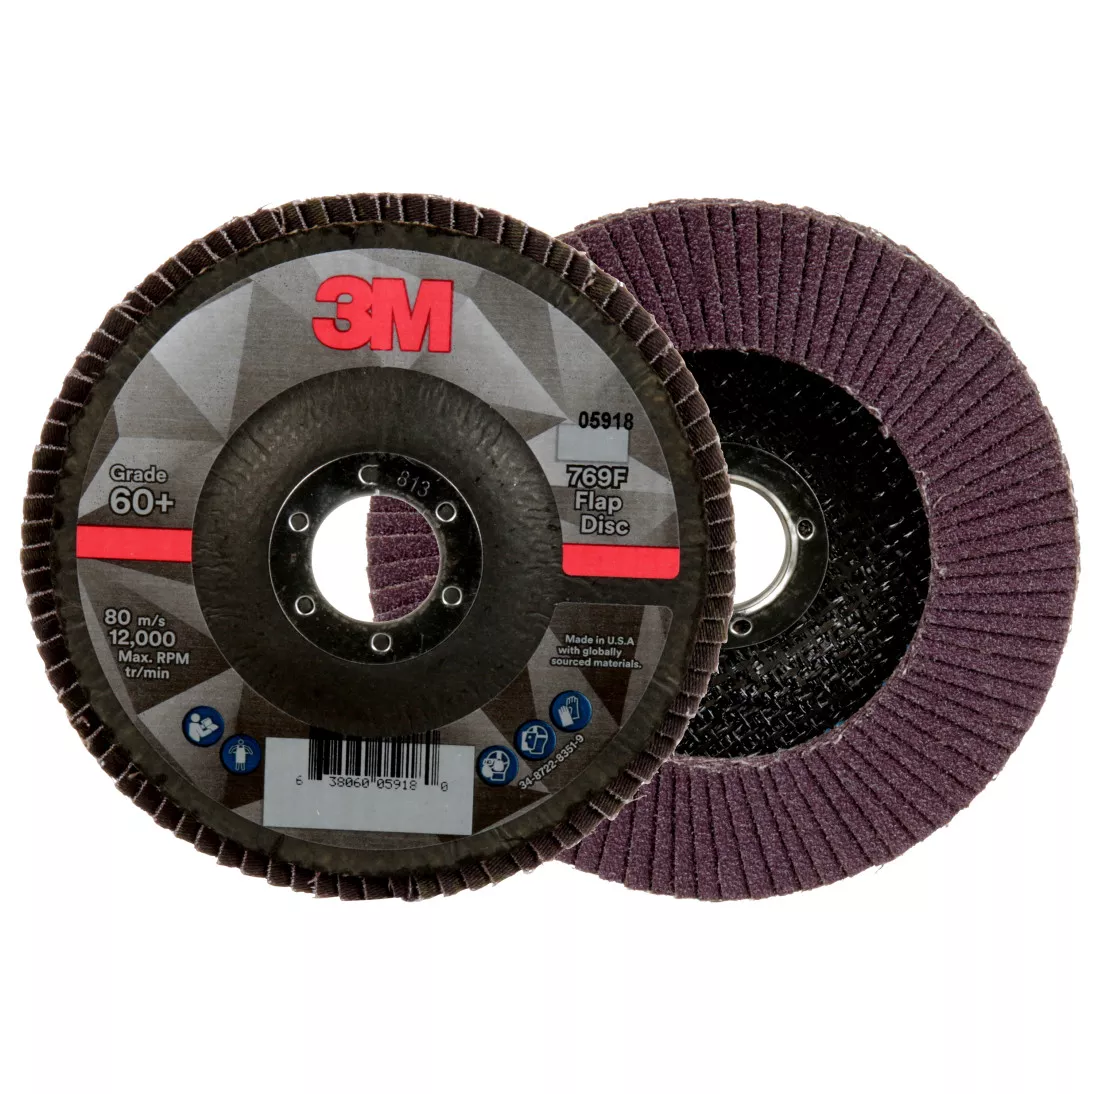 3M™ Flap Disc 769F, 60+, T27, 5 in x 7/8 in, 10 ea/Case